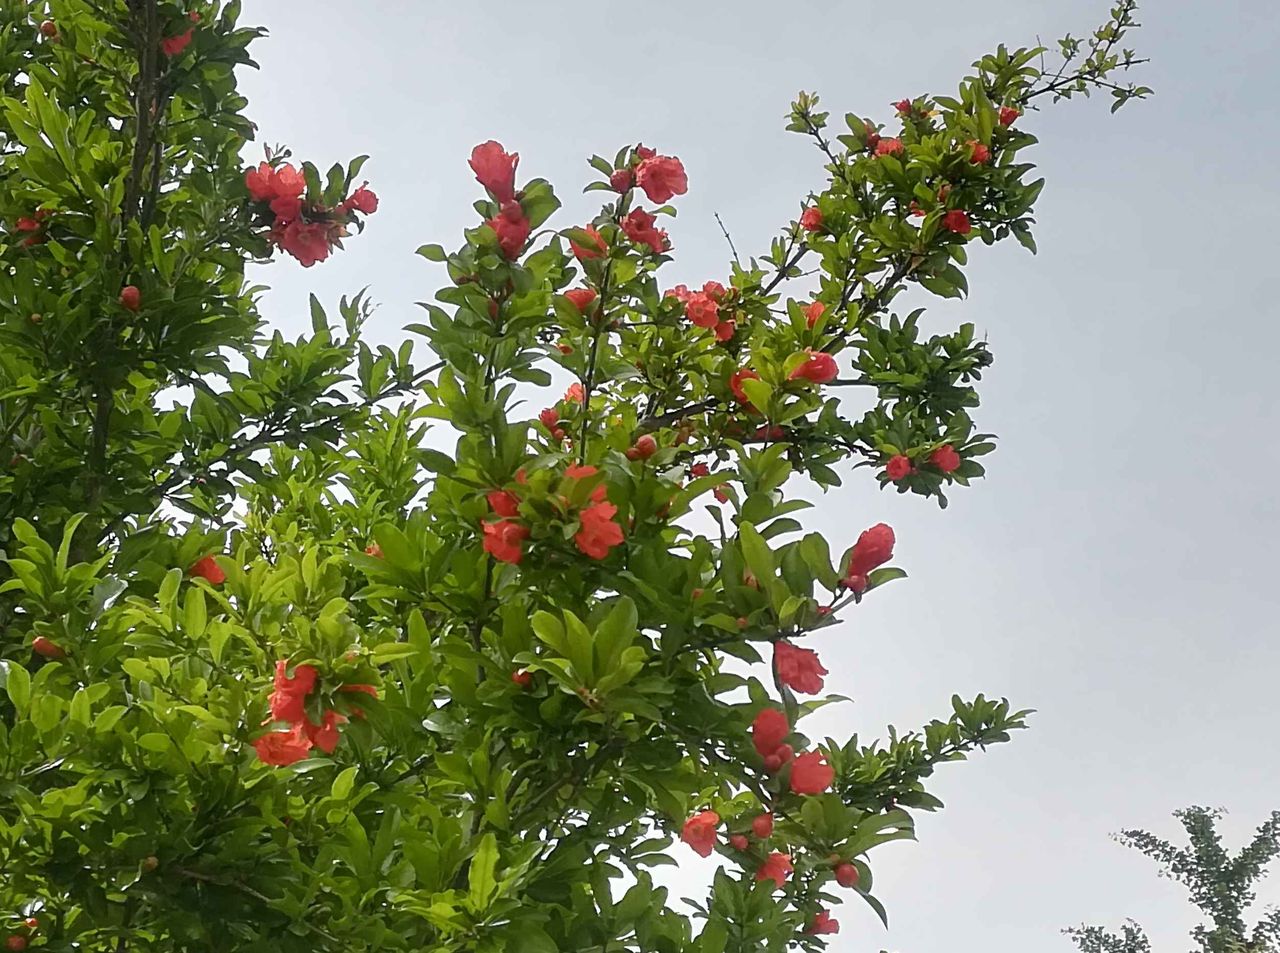 街かどに咲くこの花は何 赤い花と実が特徴 食べたことあります 19年 高槻network新聞